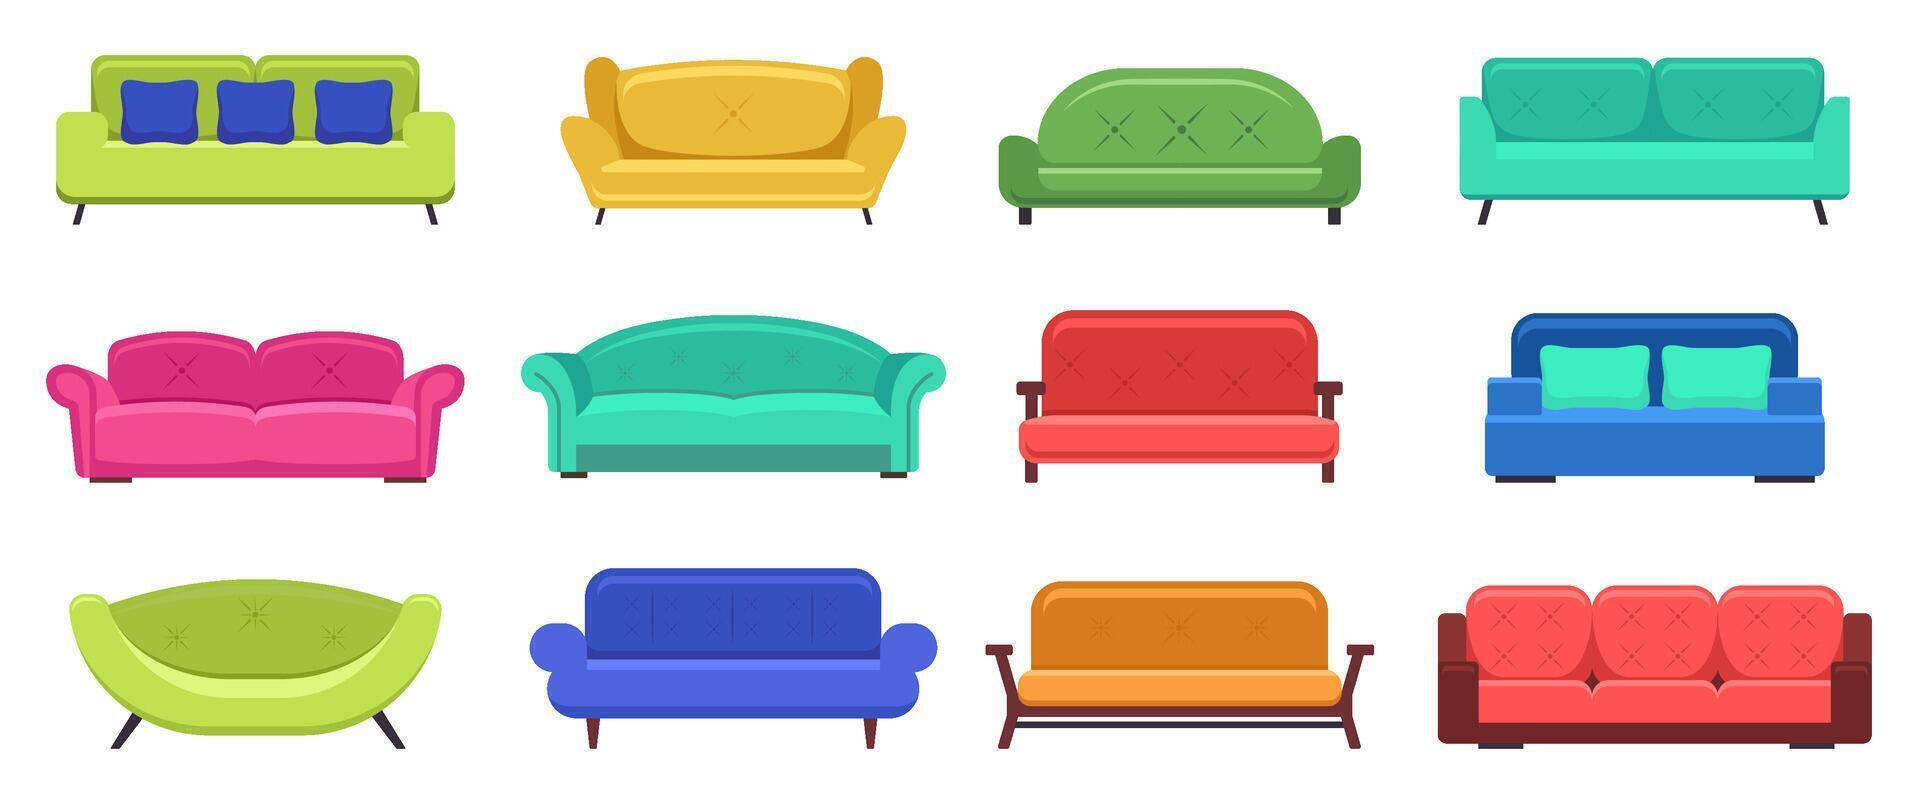 moderno sofás cómodo moderno Departamento sofá, acogedor sofás, casa sofá muebles, Doméstico sofás salón. vector aislado ilustración conjunto